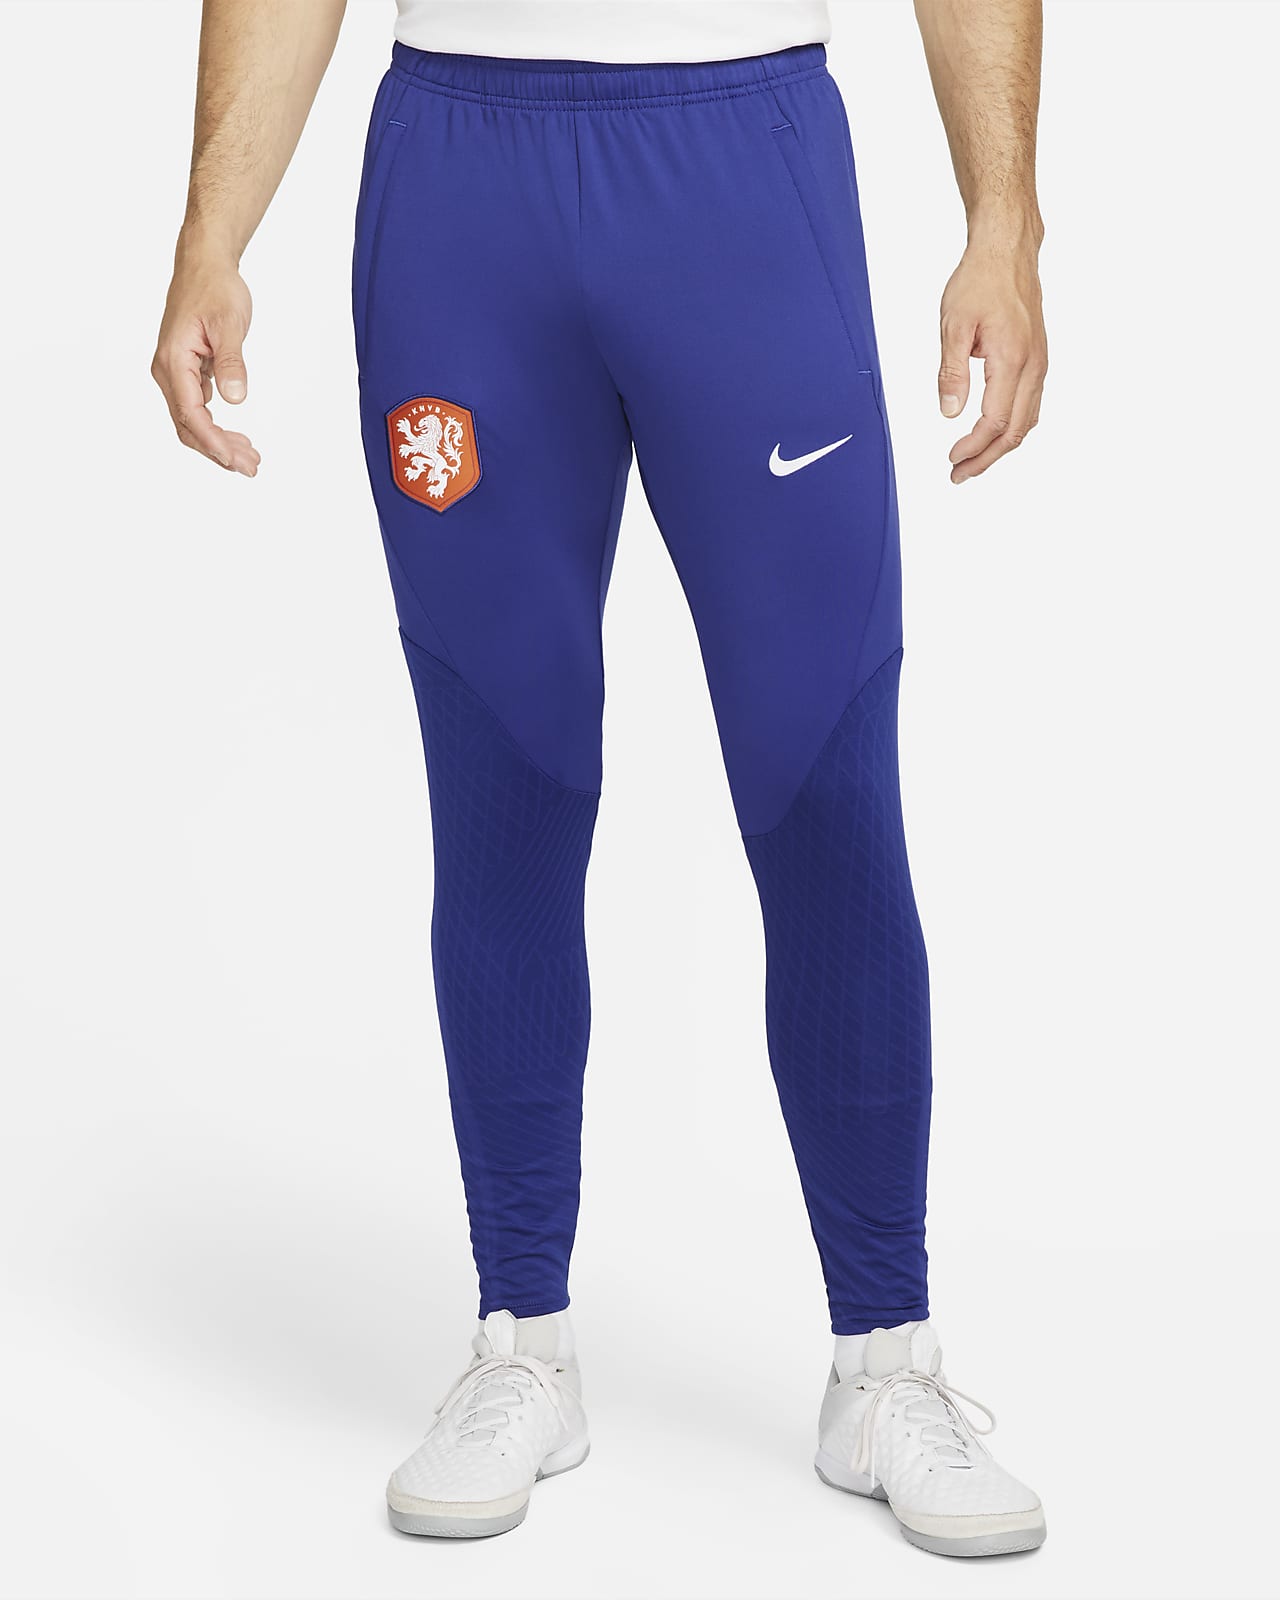 Pantalones de fútbol Nike para Bajos Strike. Nike.com